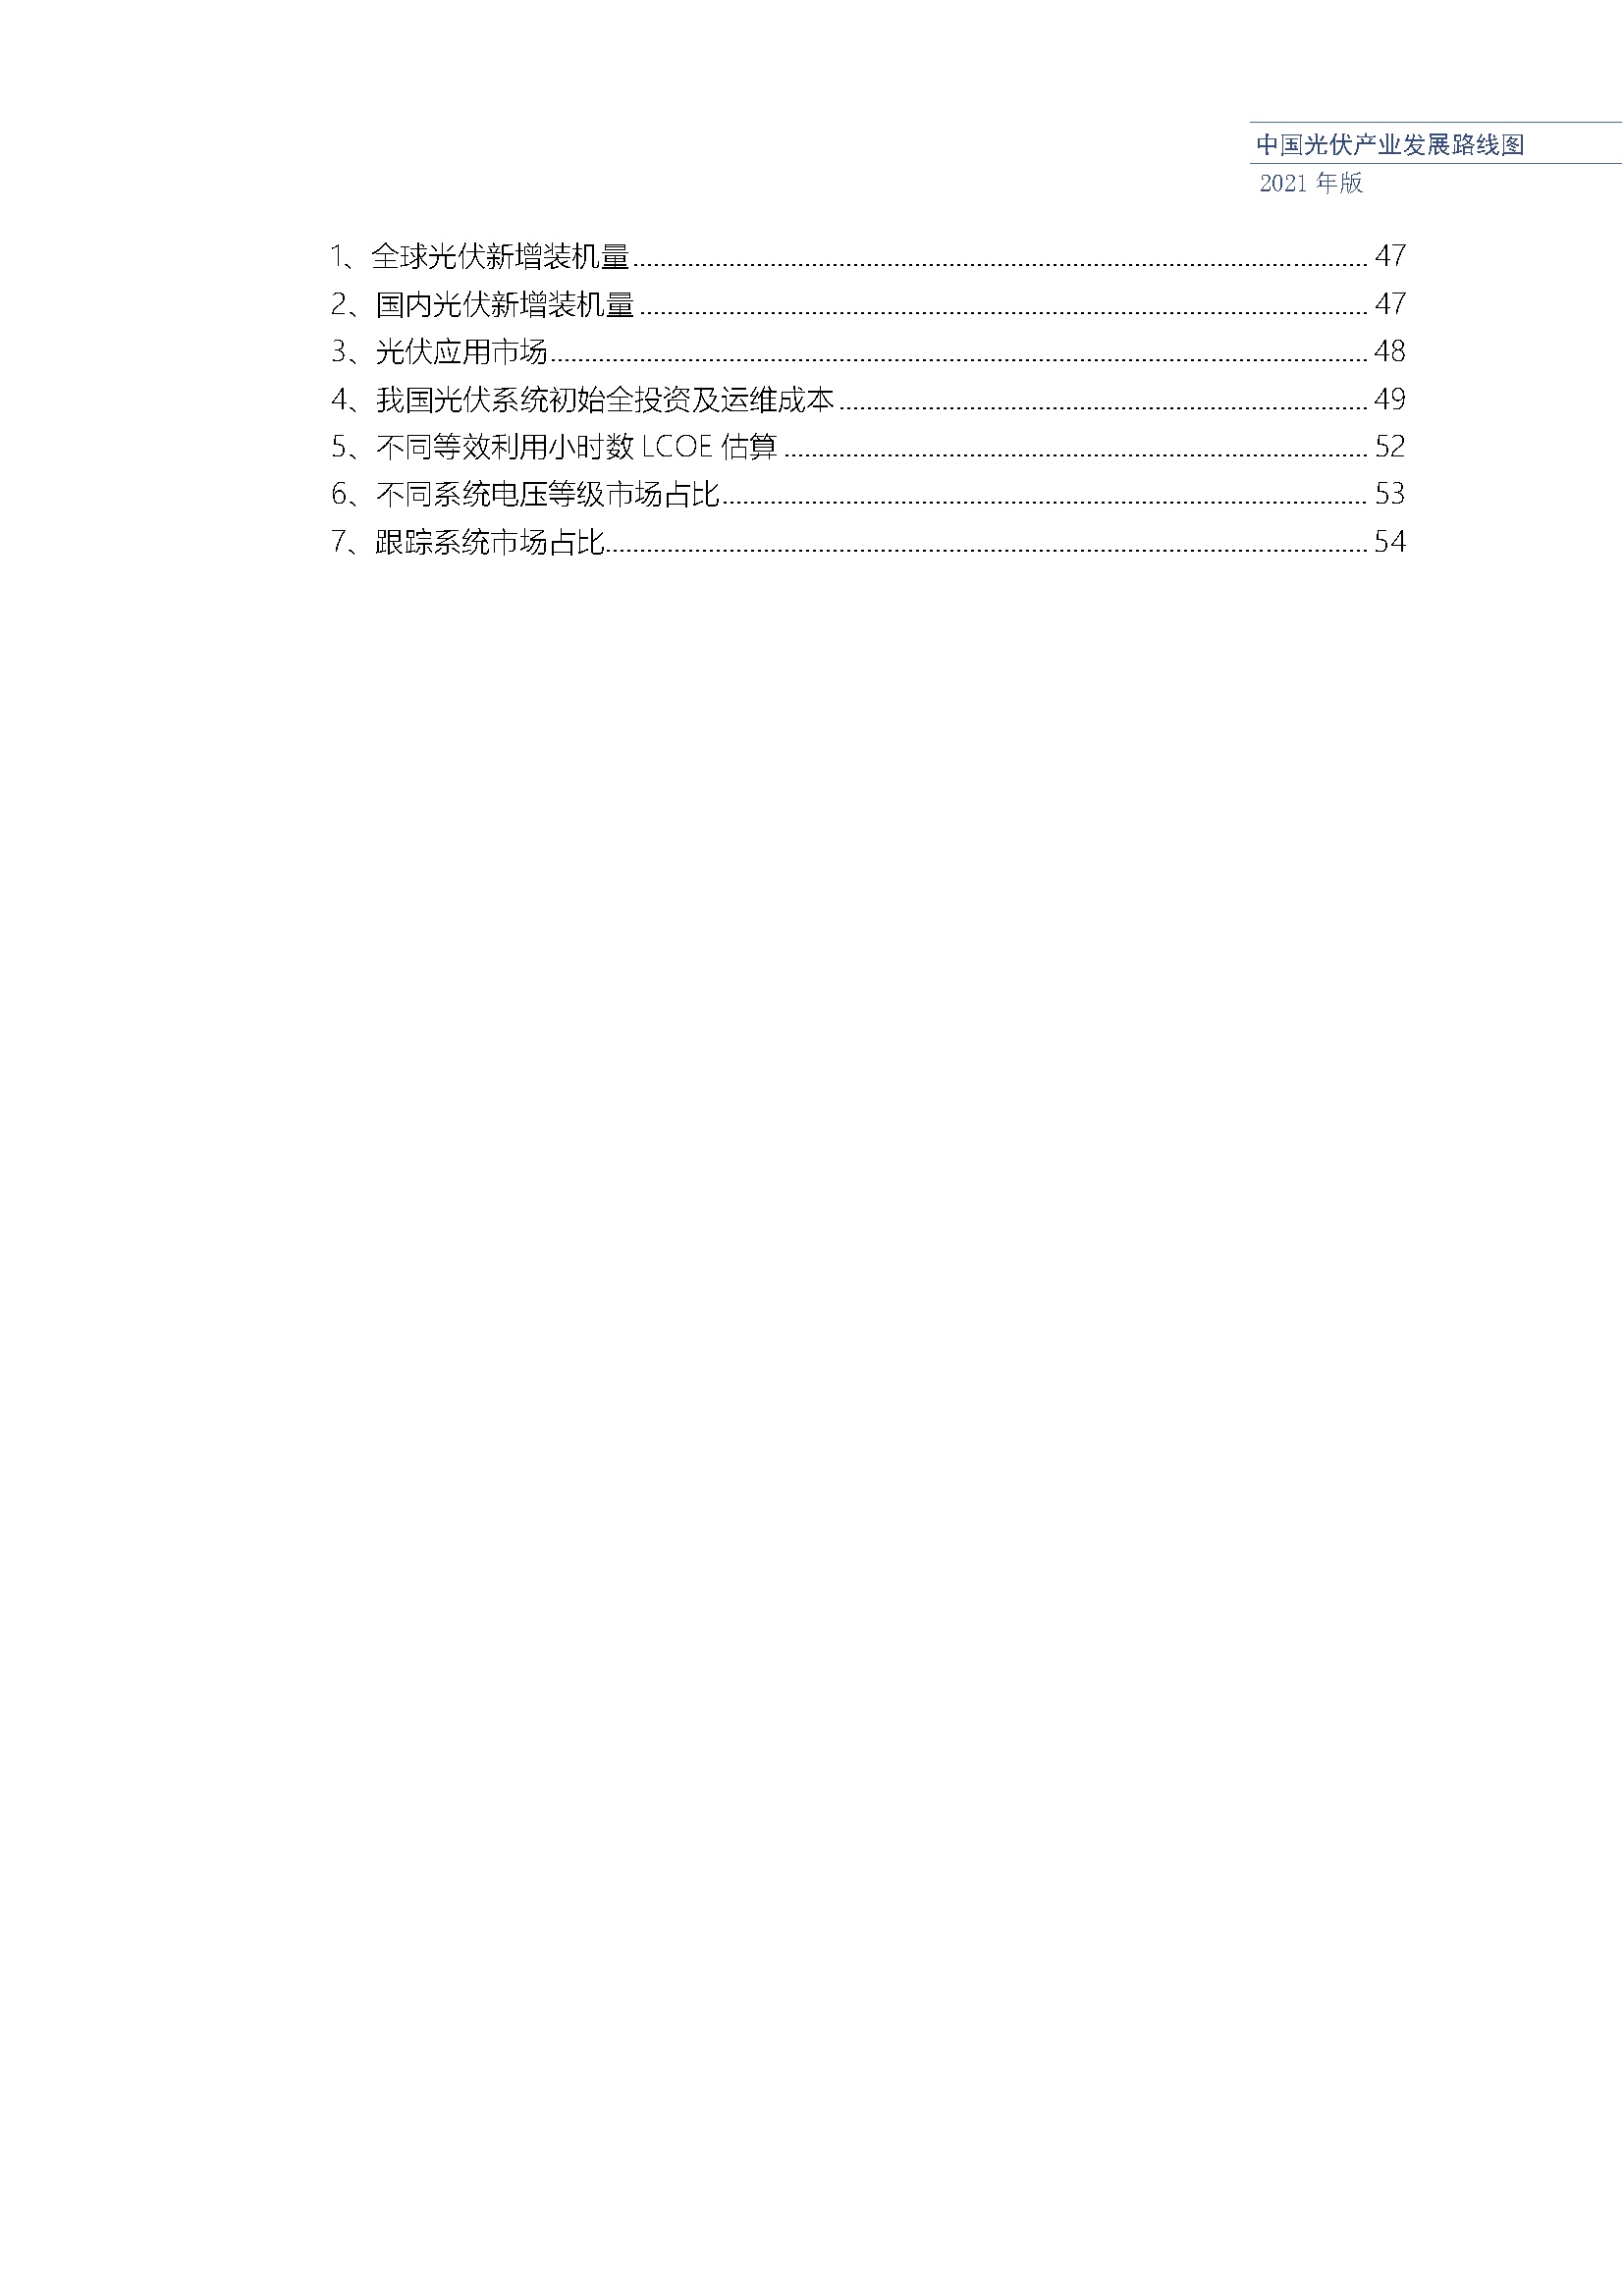 中国光伏产业发展路线图(2021年版)_页面_10.png